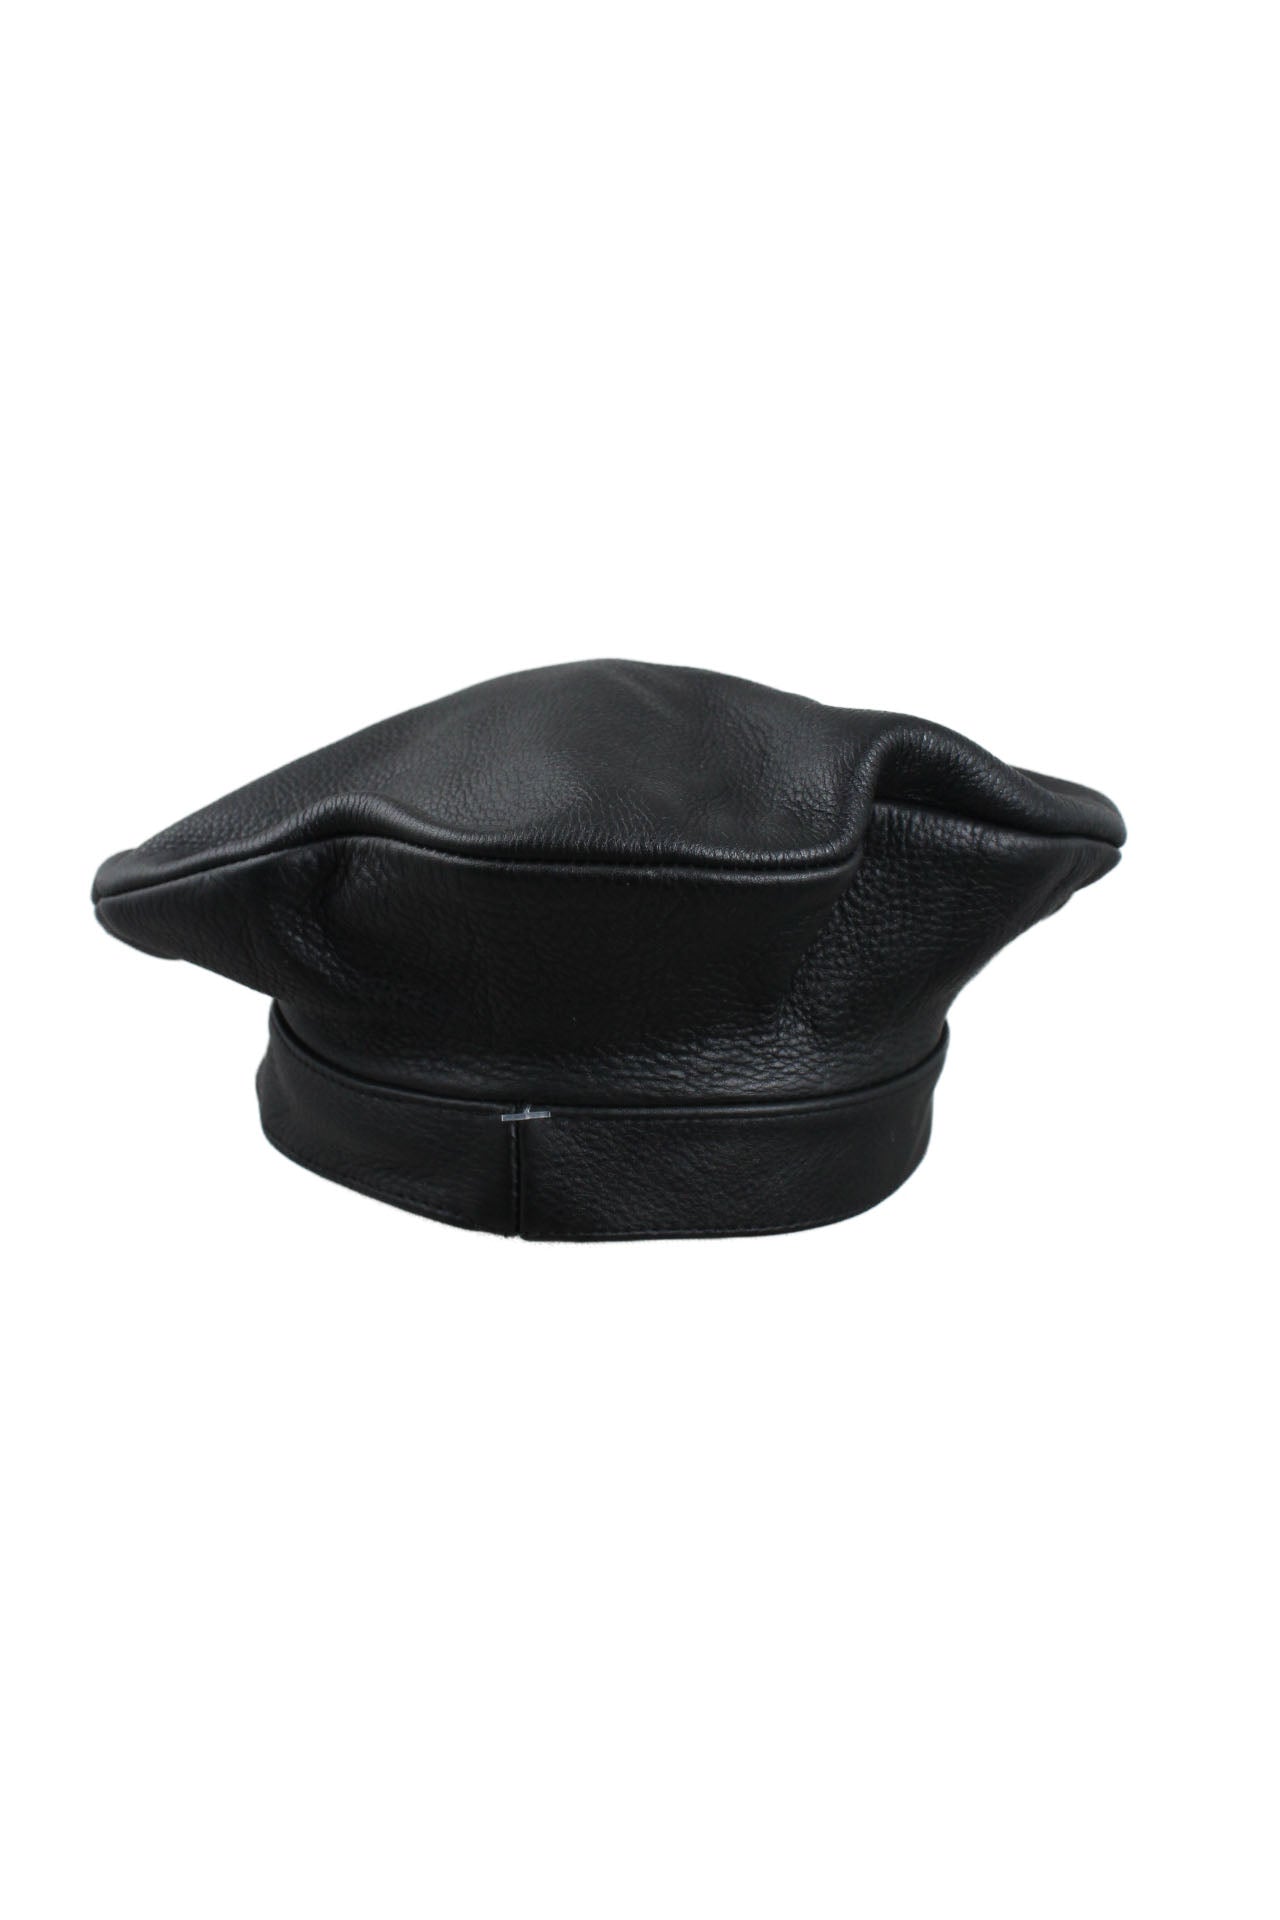 back of black leather beret hat